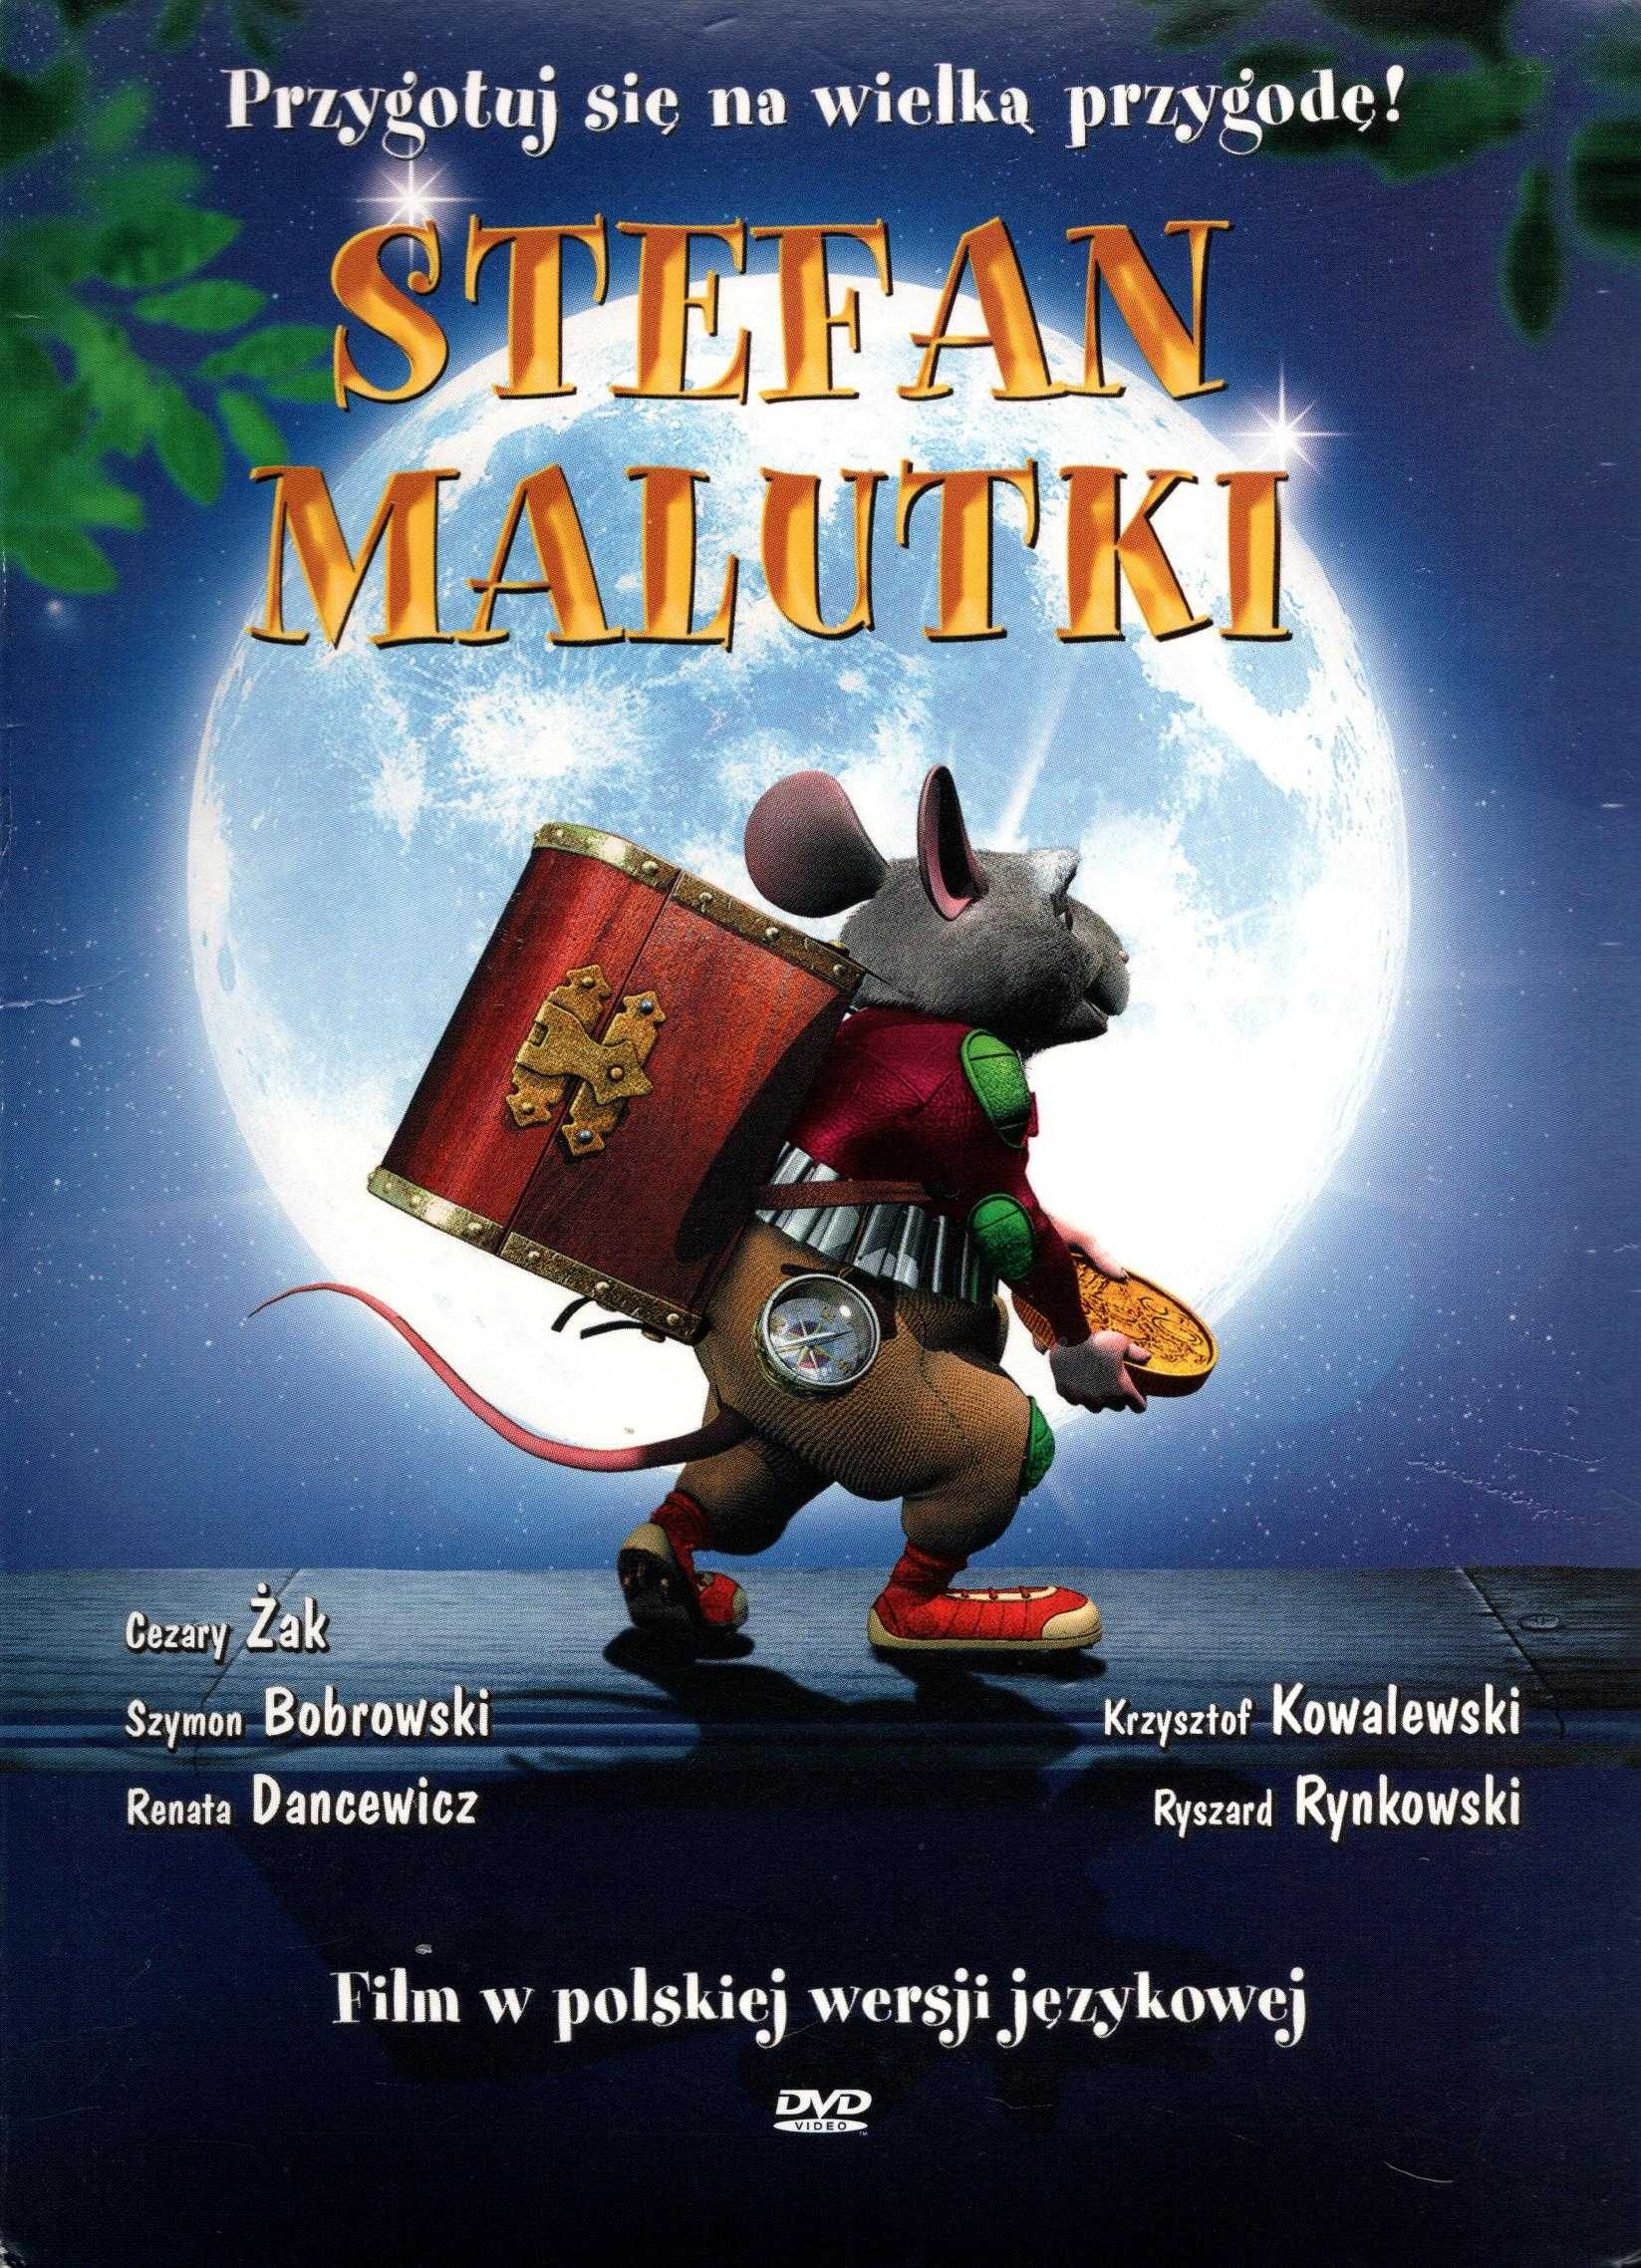 Stefan malutki. DVD w dużej kopercie używane. 02. 03. 2024 r.